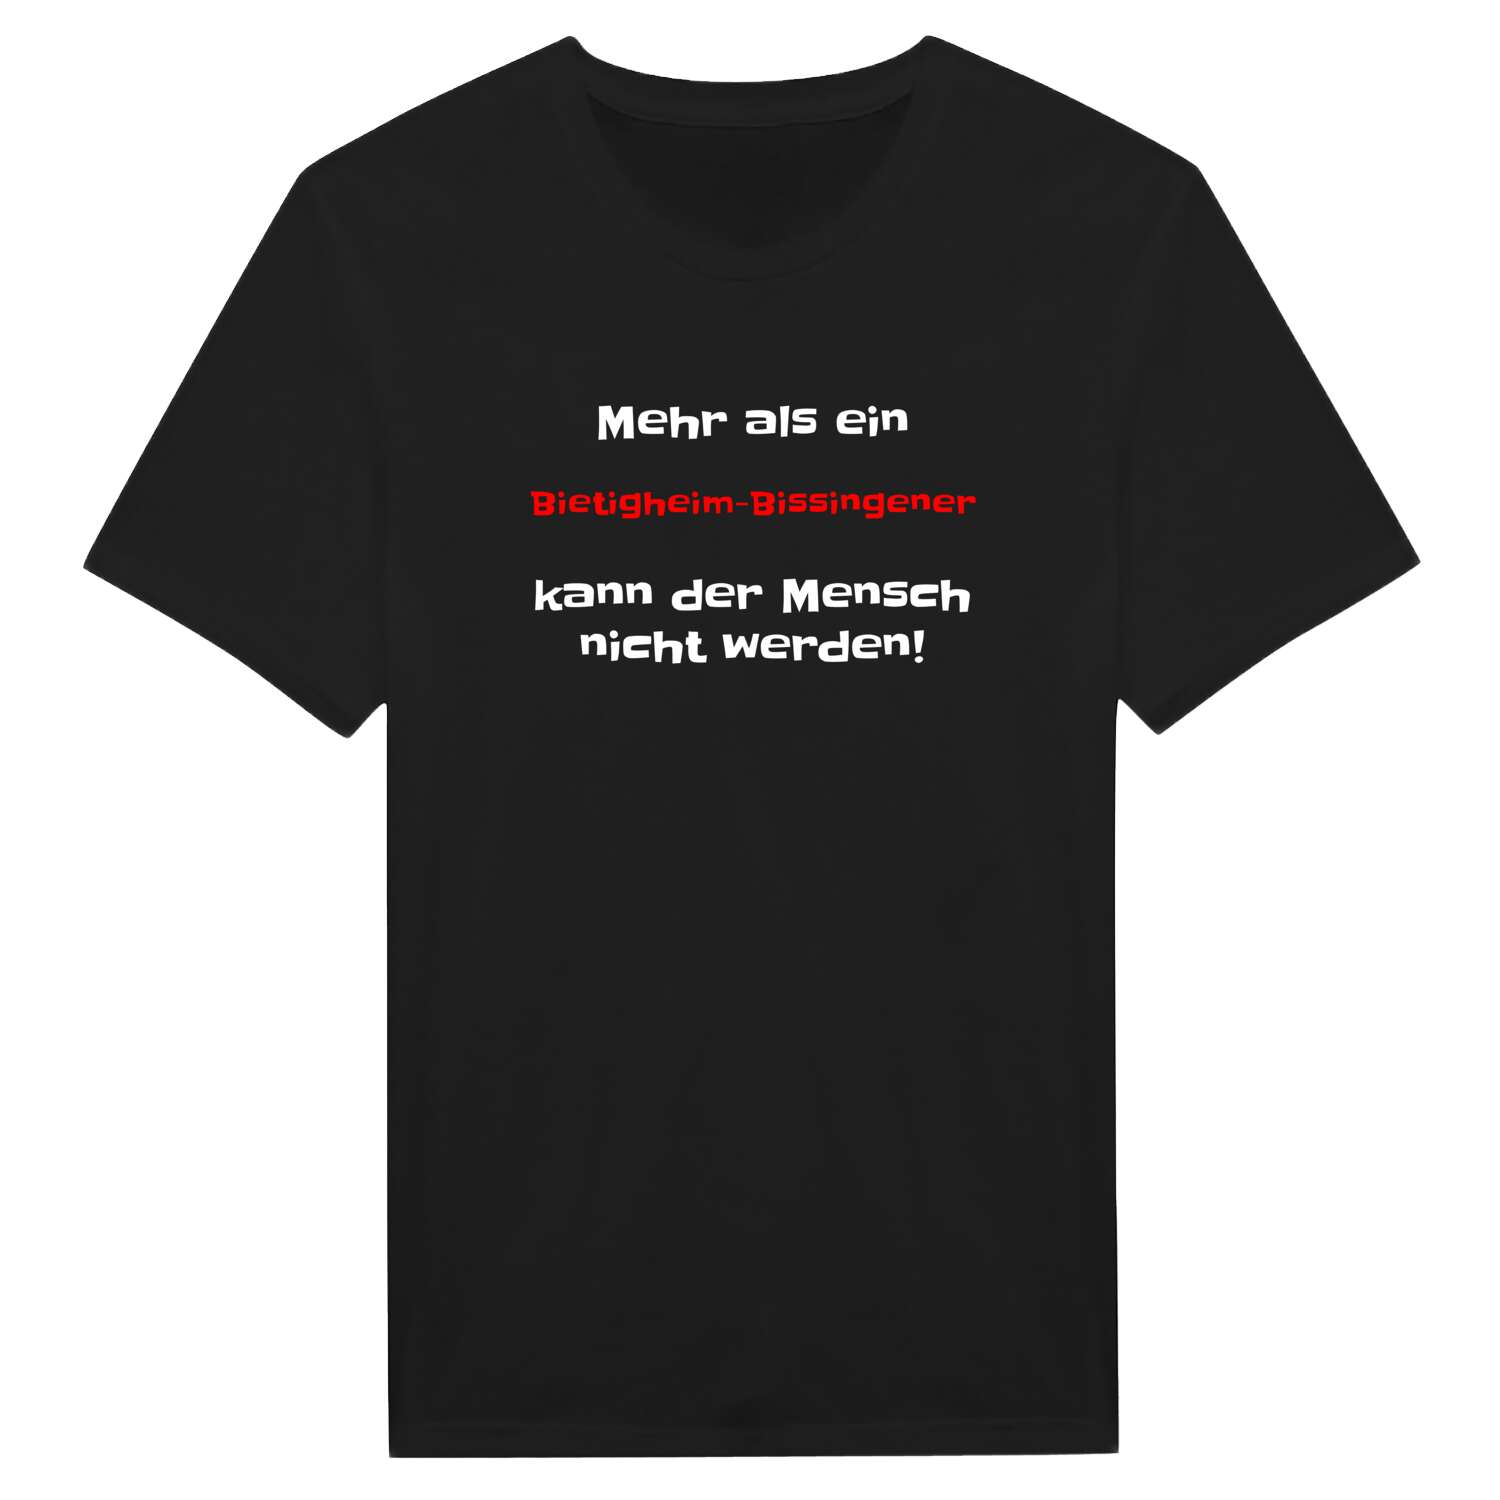 Bietigheim-Bissingen T-Shirt »Mehr als ein«